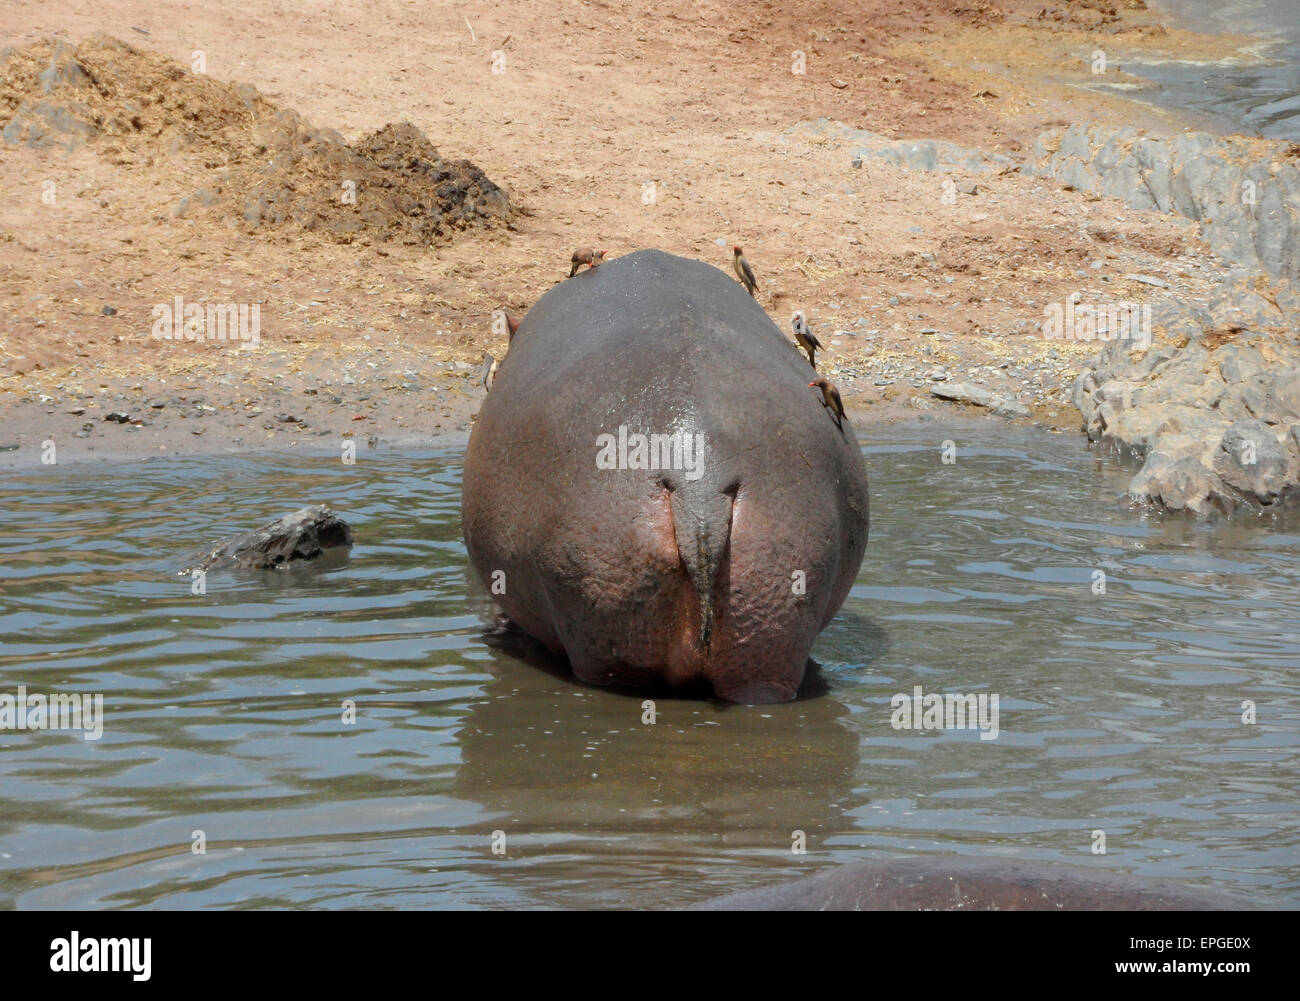 FEBRUARY 2012 - TANZANIA: Hippo, Tanzania, Africa. Stock Photo